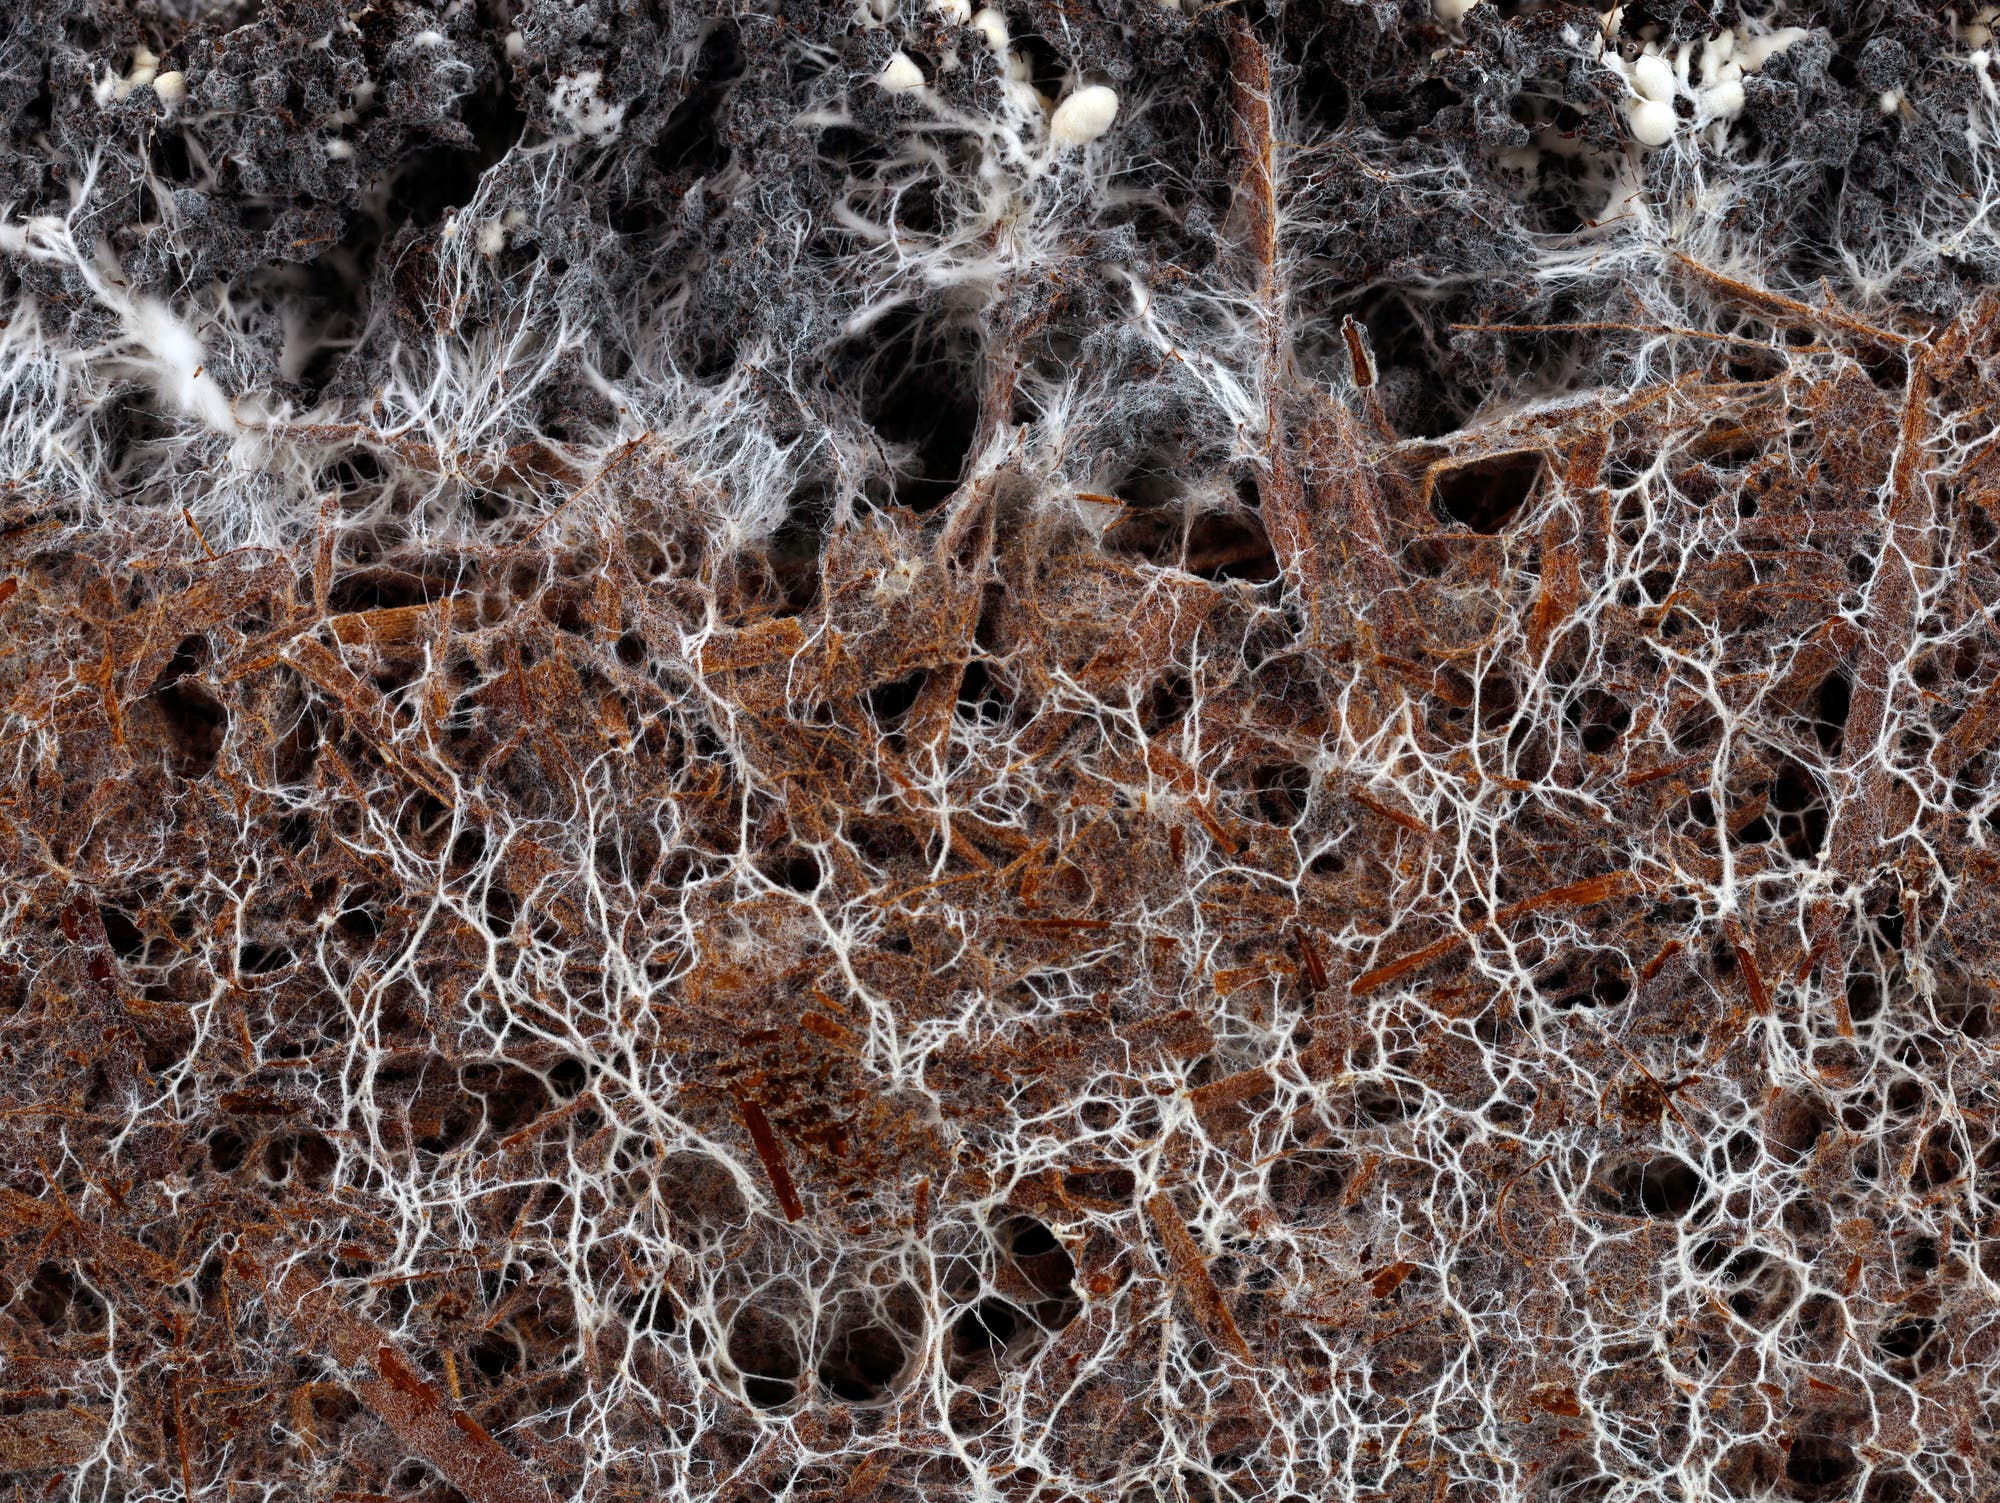 Pilzfäden durchziehen den Waldboden